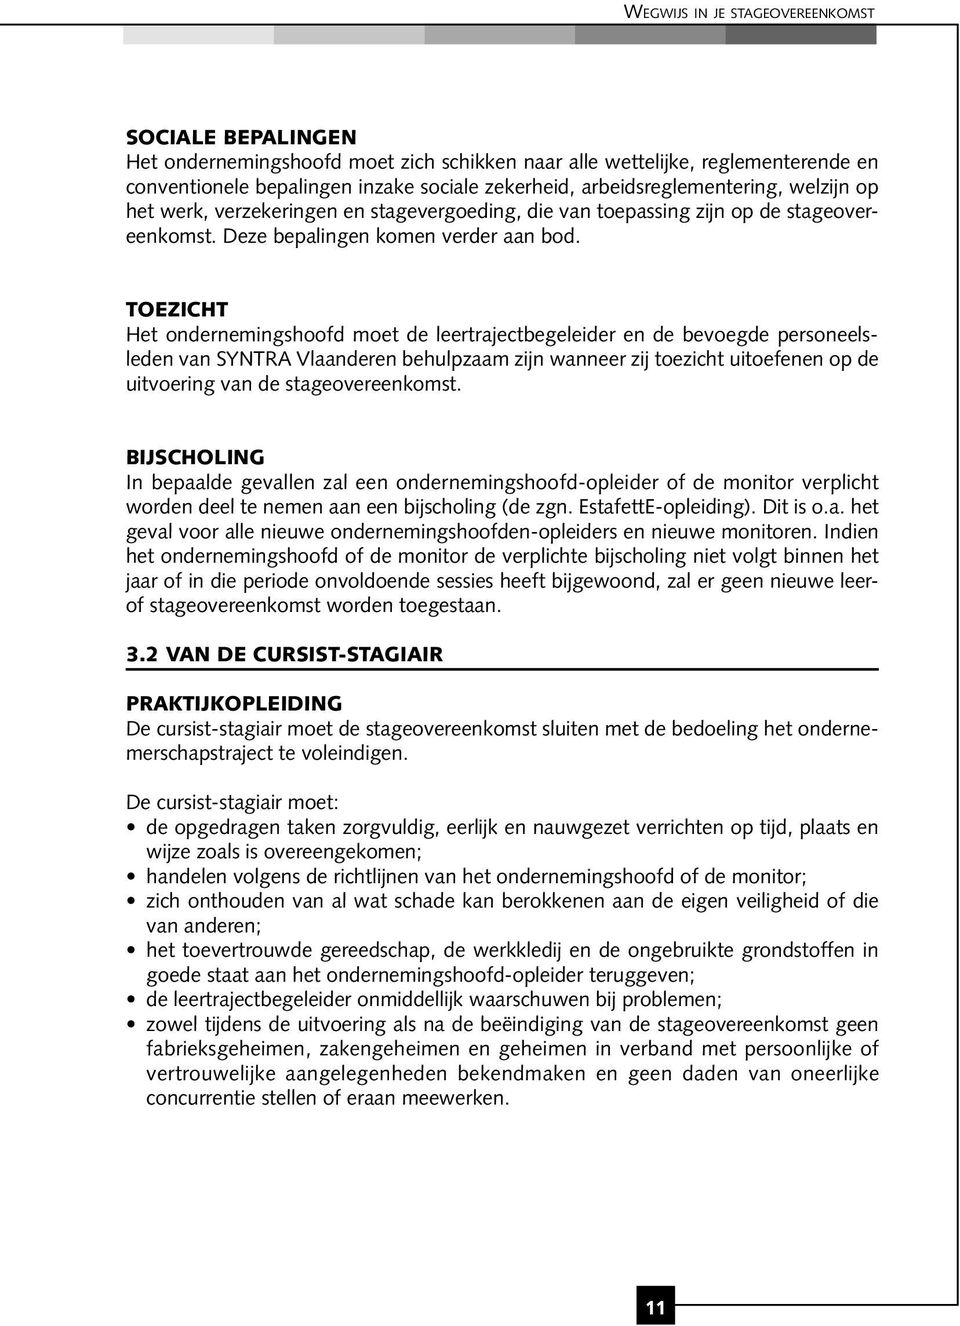 TOEZICHT Het ondernemingshoofd moet de leertrajectbegeleider en de bevoegde personeelsleden van SYNTRA Vlaanderen behulpzaam zijn wanneer zij toezicht uitoefenen op de uitvoering van de